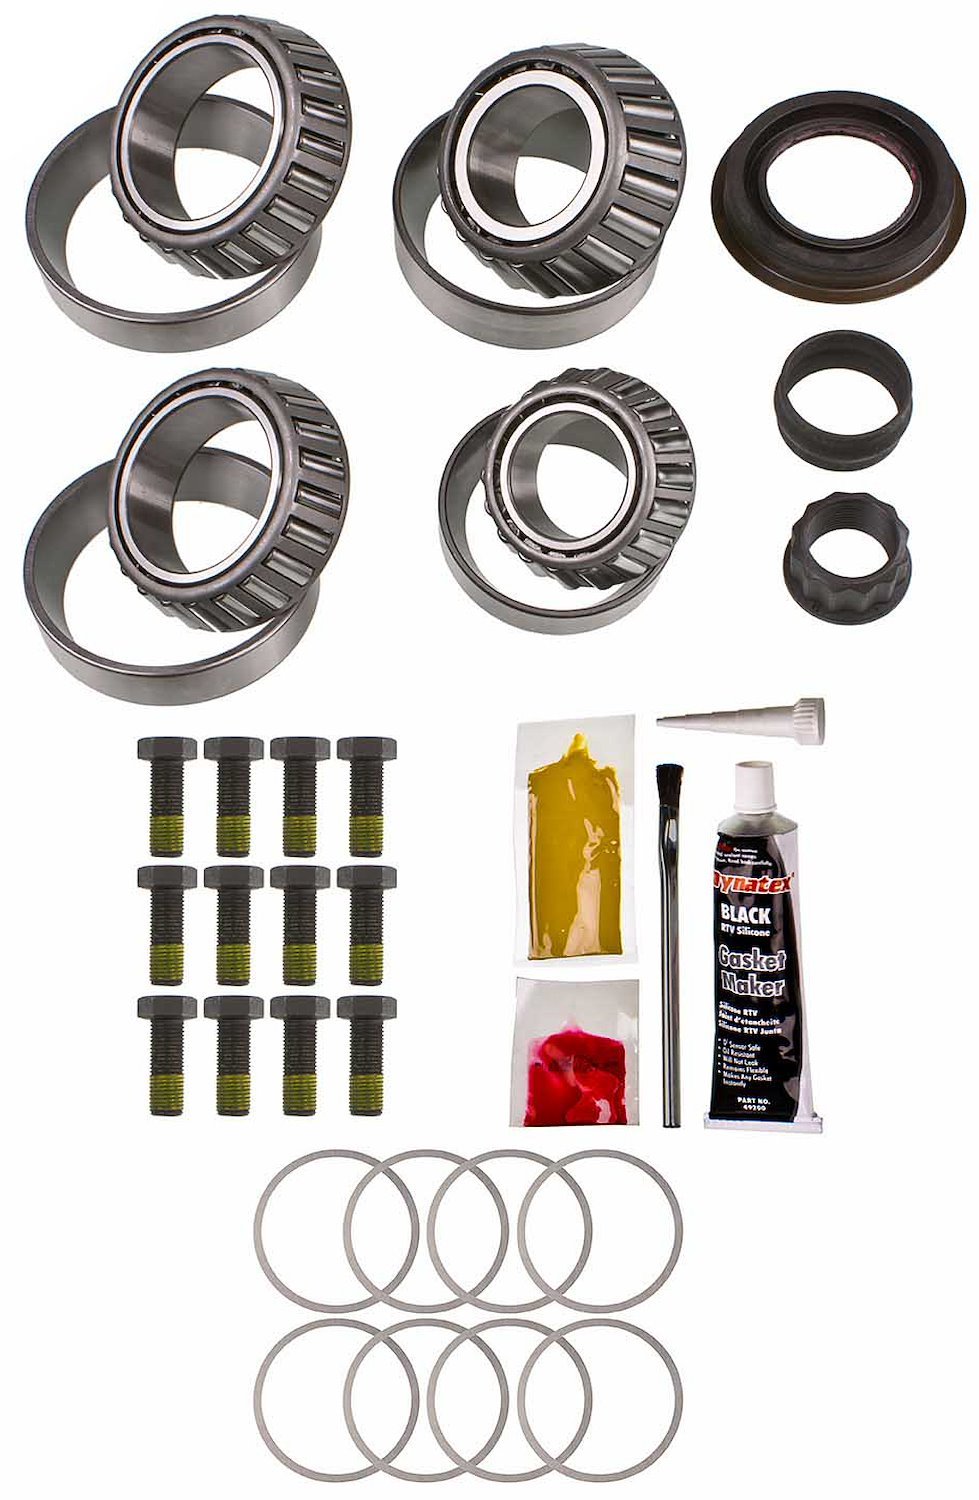 Differential Master Bearing Kit Chrysler 11.5 in.14-bolt - Timken Bearings